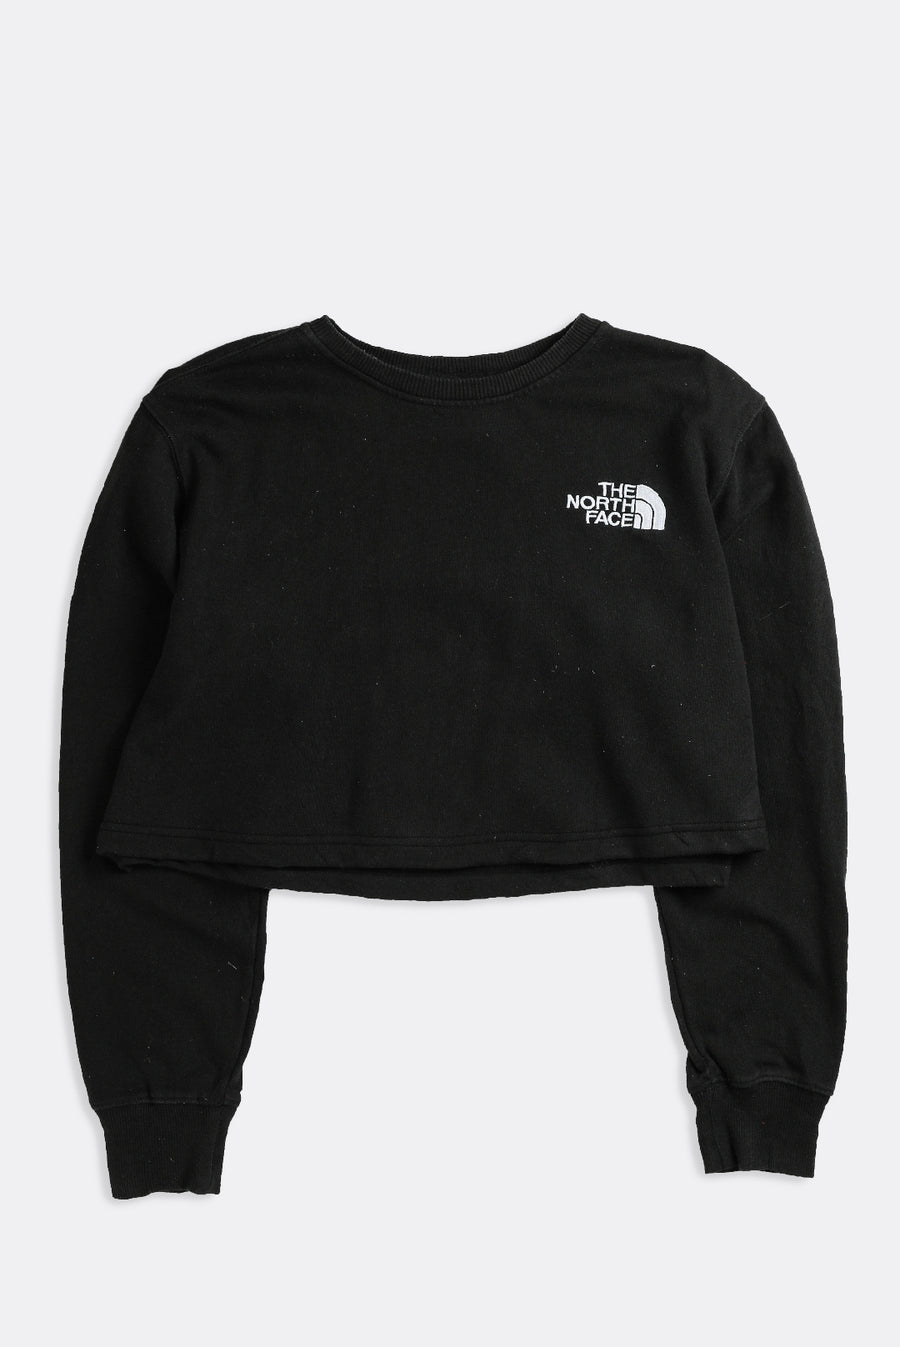 Rework North Face Crop Sweatshirt - XL